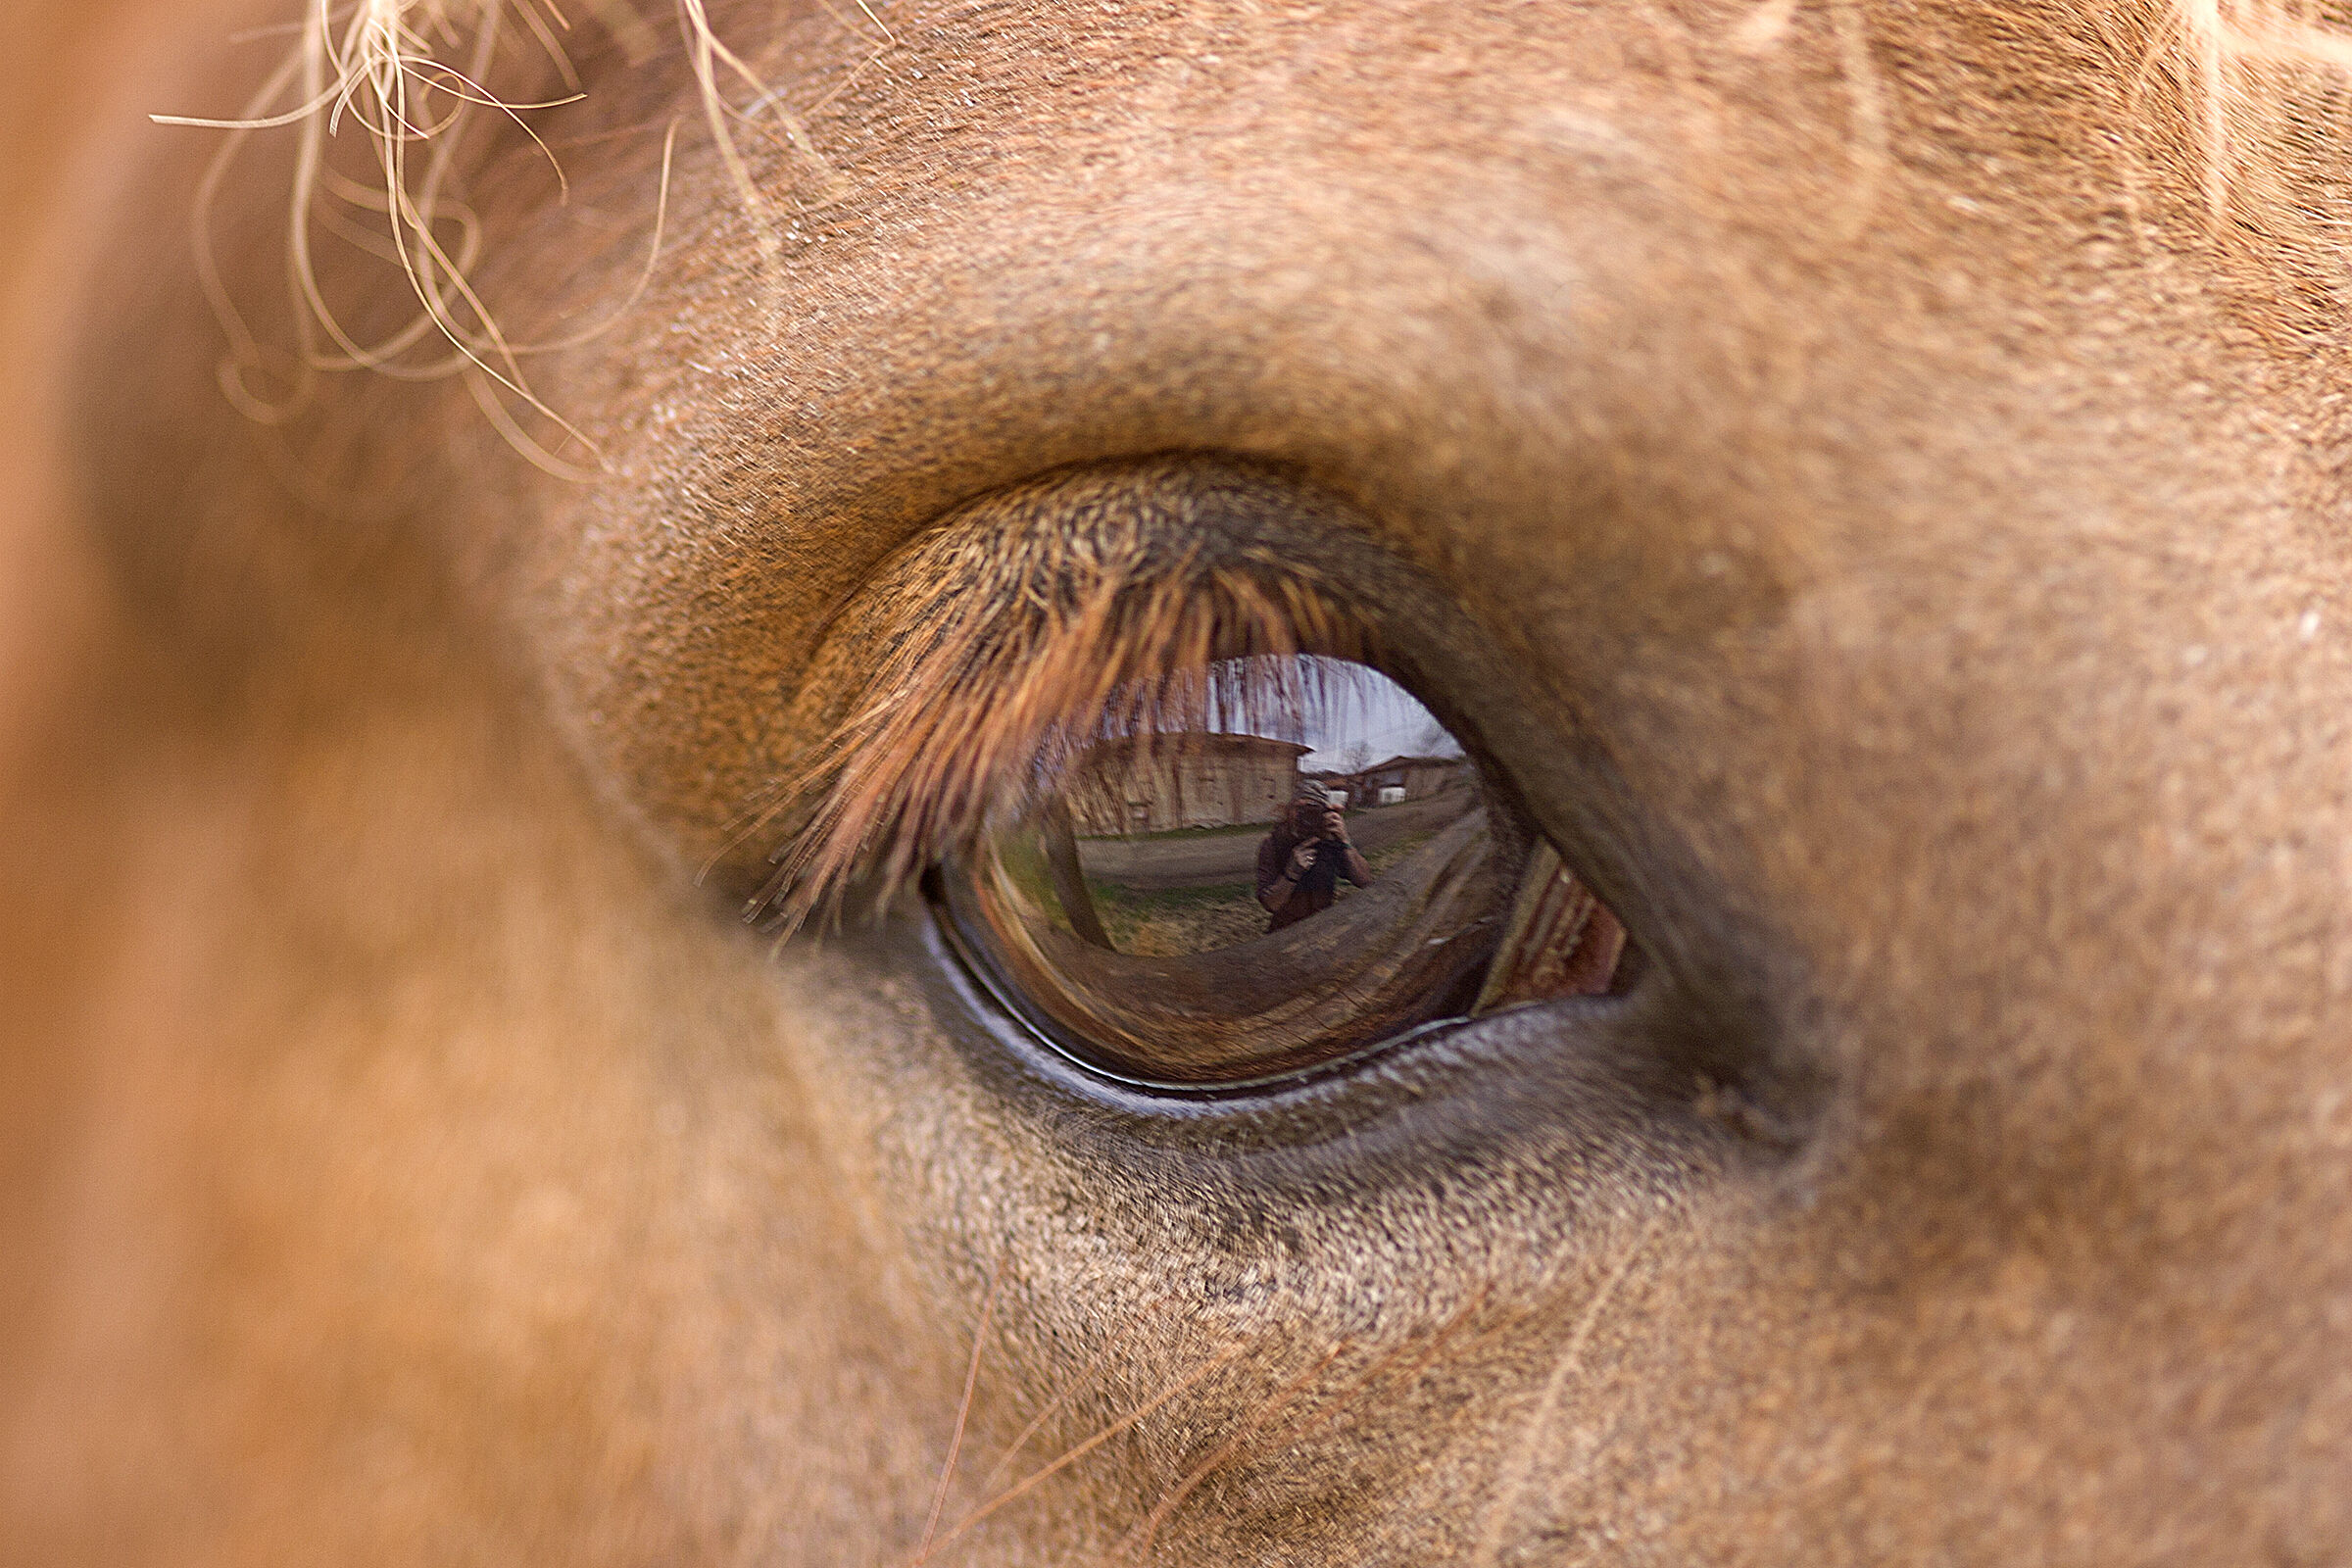 Nell' occhio del cavallo...